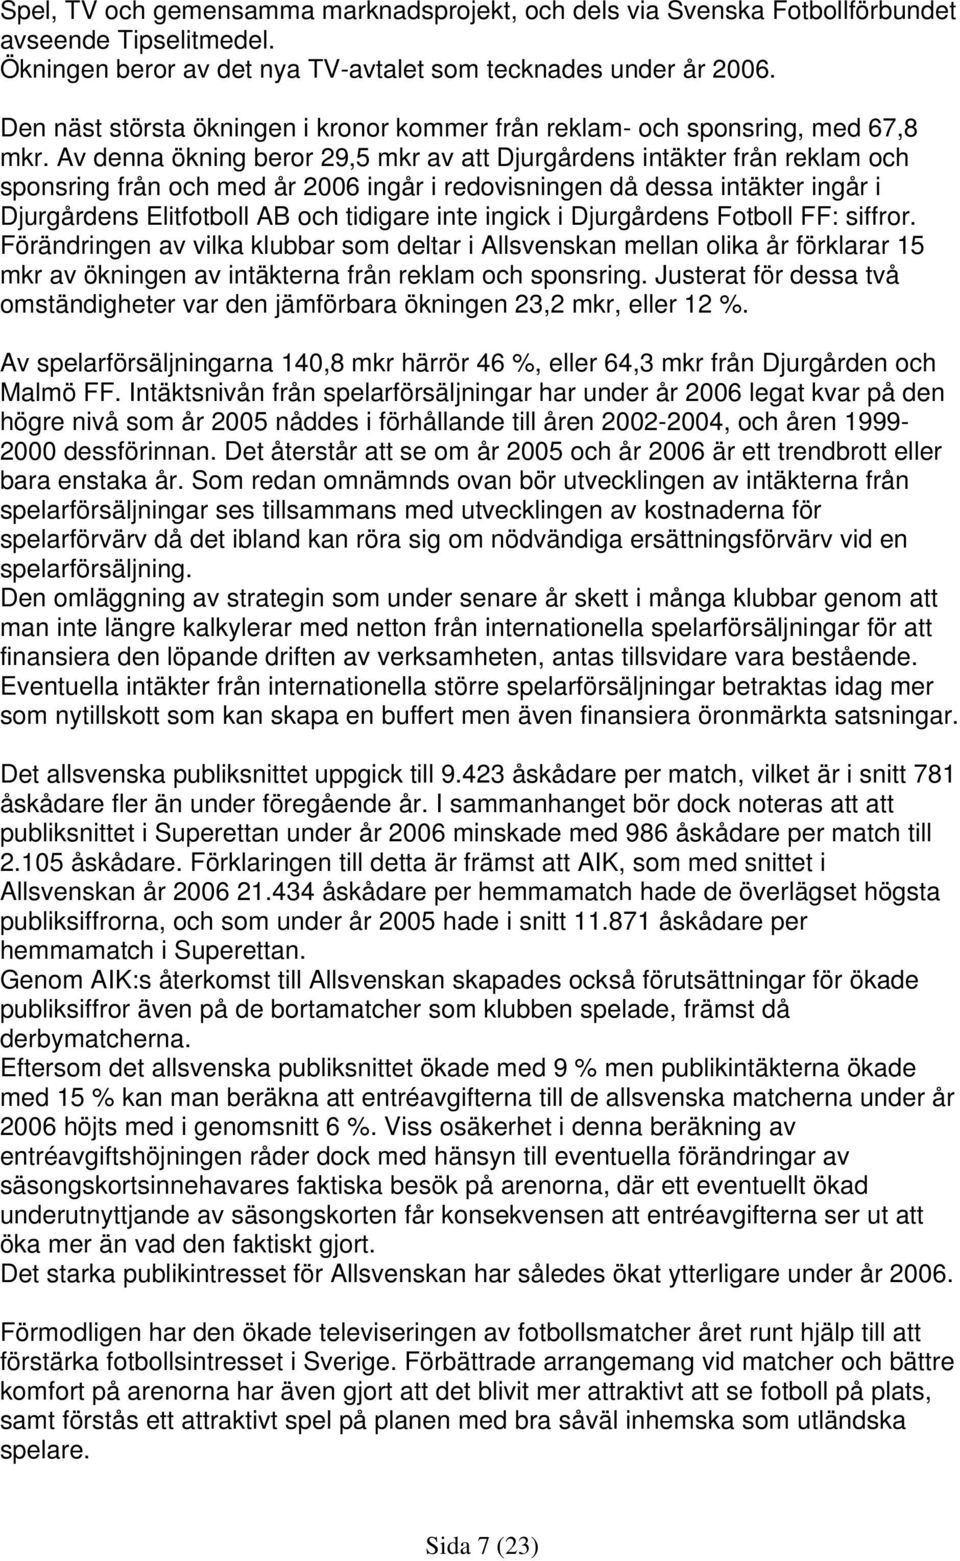 Av denna ökning beror 29,5 mkr av att Djurgårdens intäkter från reklam och sponsring från och med år 2006 ingår i redovisningen då dessa intäkter ingår i Djurgårdens Elitfotboll AB och tidigare inte